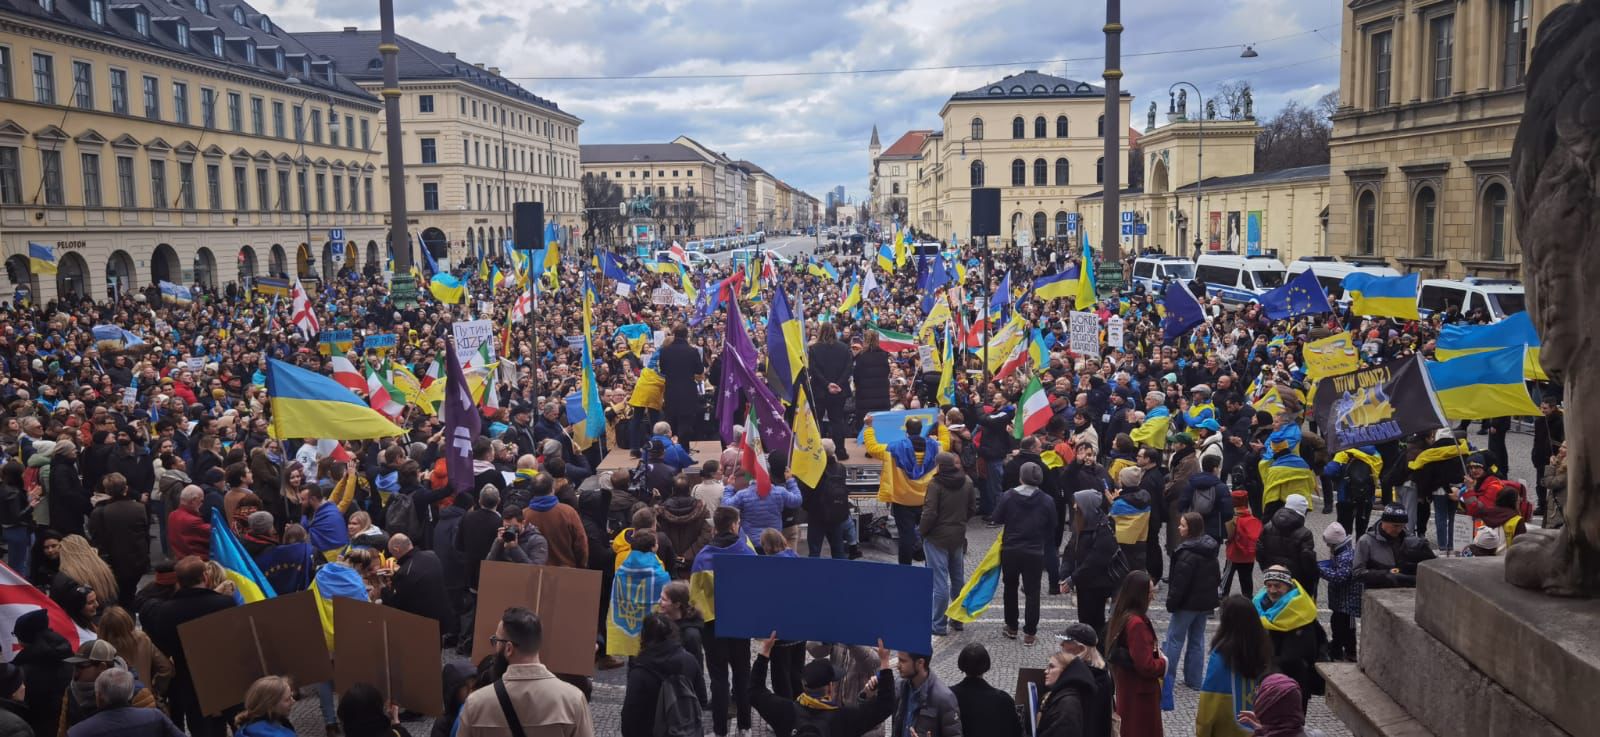 مطالب رسمية وشعبية أوكرانية واستجابة بطيئة من الغرب في مؤتمر ميونخ للأمن